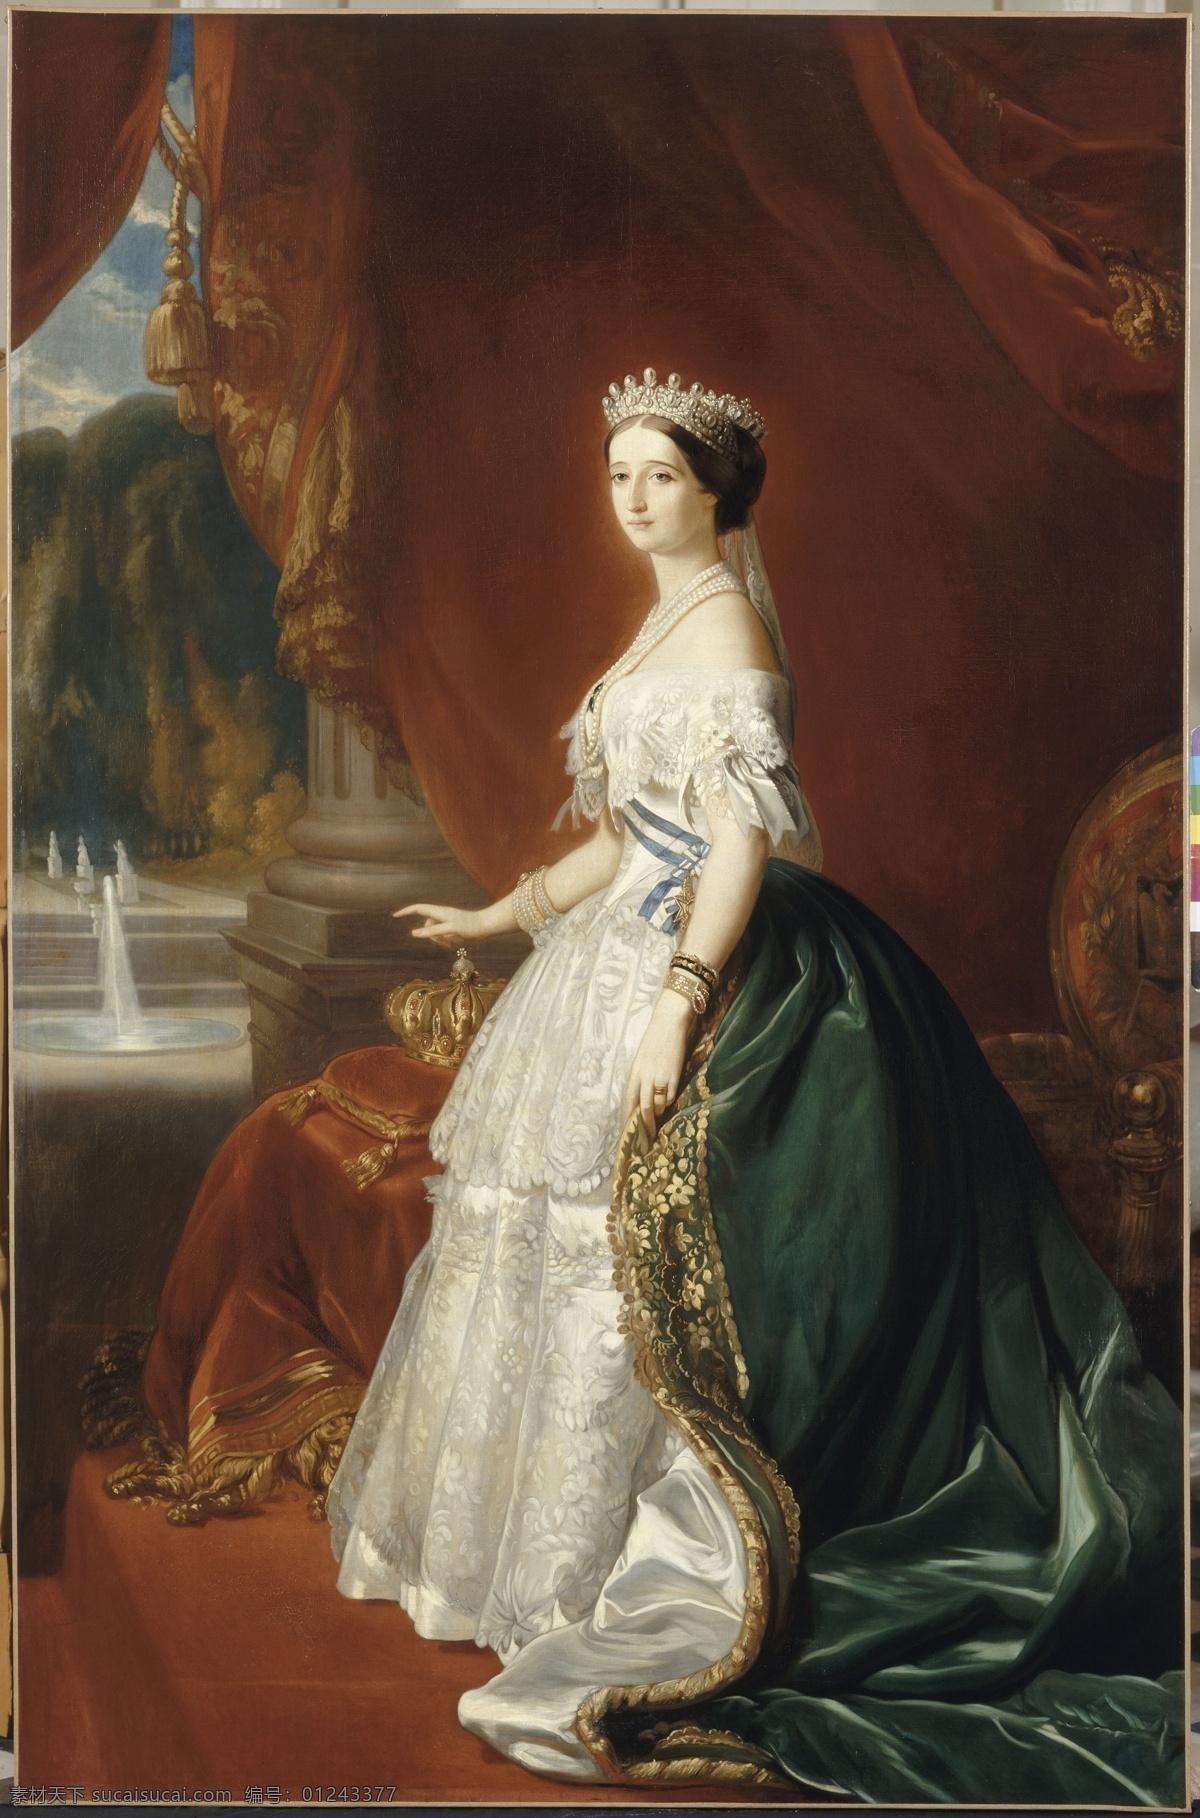 弗朗茨 萨维尔 温特 哈特 作品 德国画家 法兰西第三 共和国 欧仁妮皇后 拿破仑三世 之妻 19世纪油画 油画 文化艺术 绘画书法